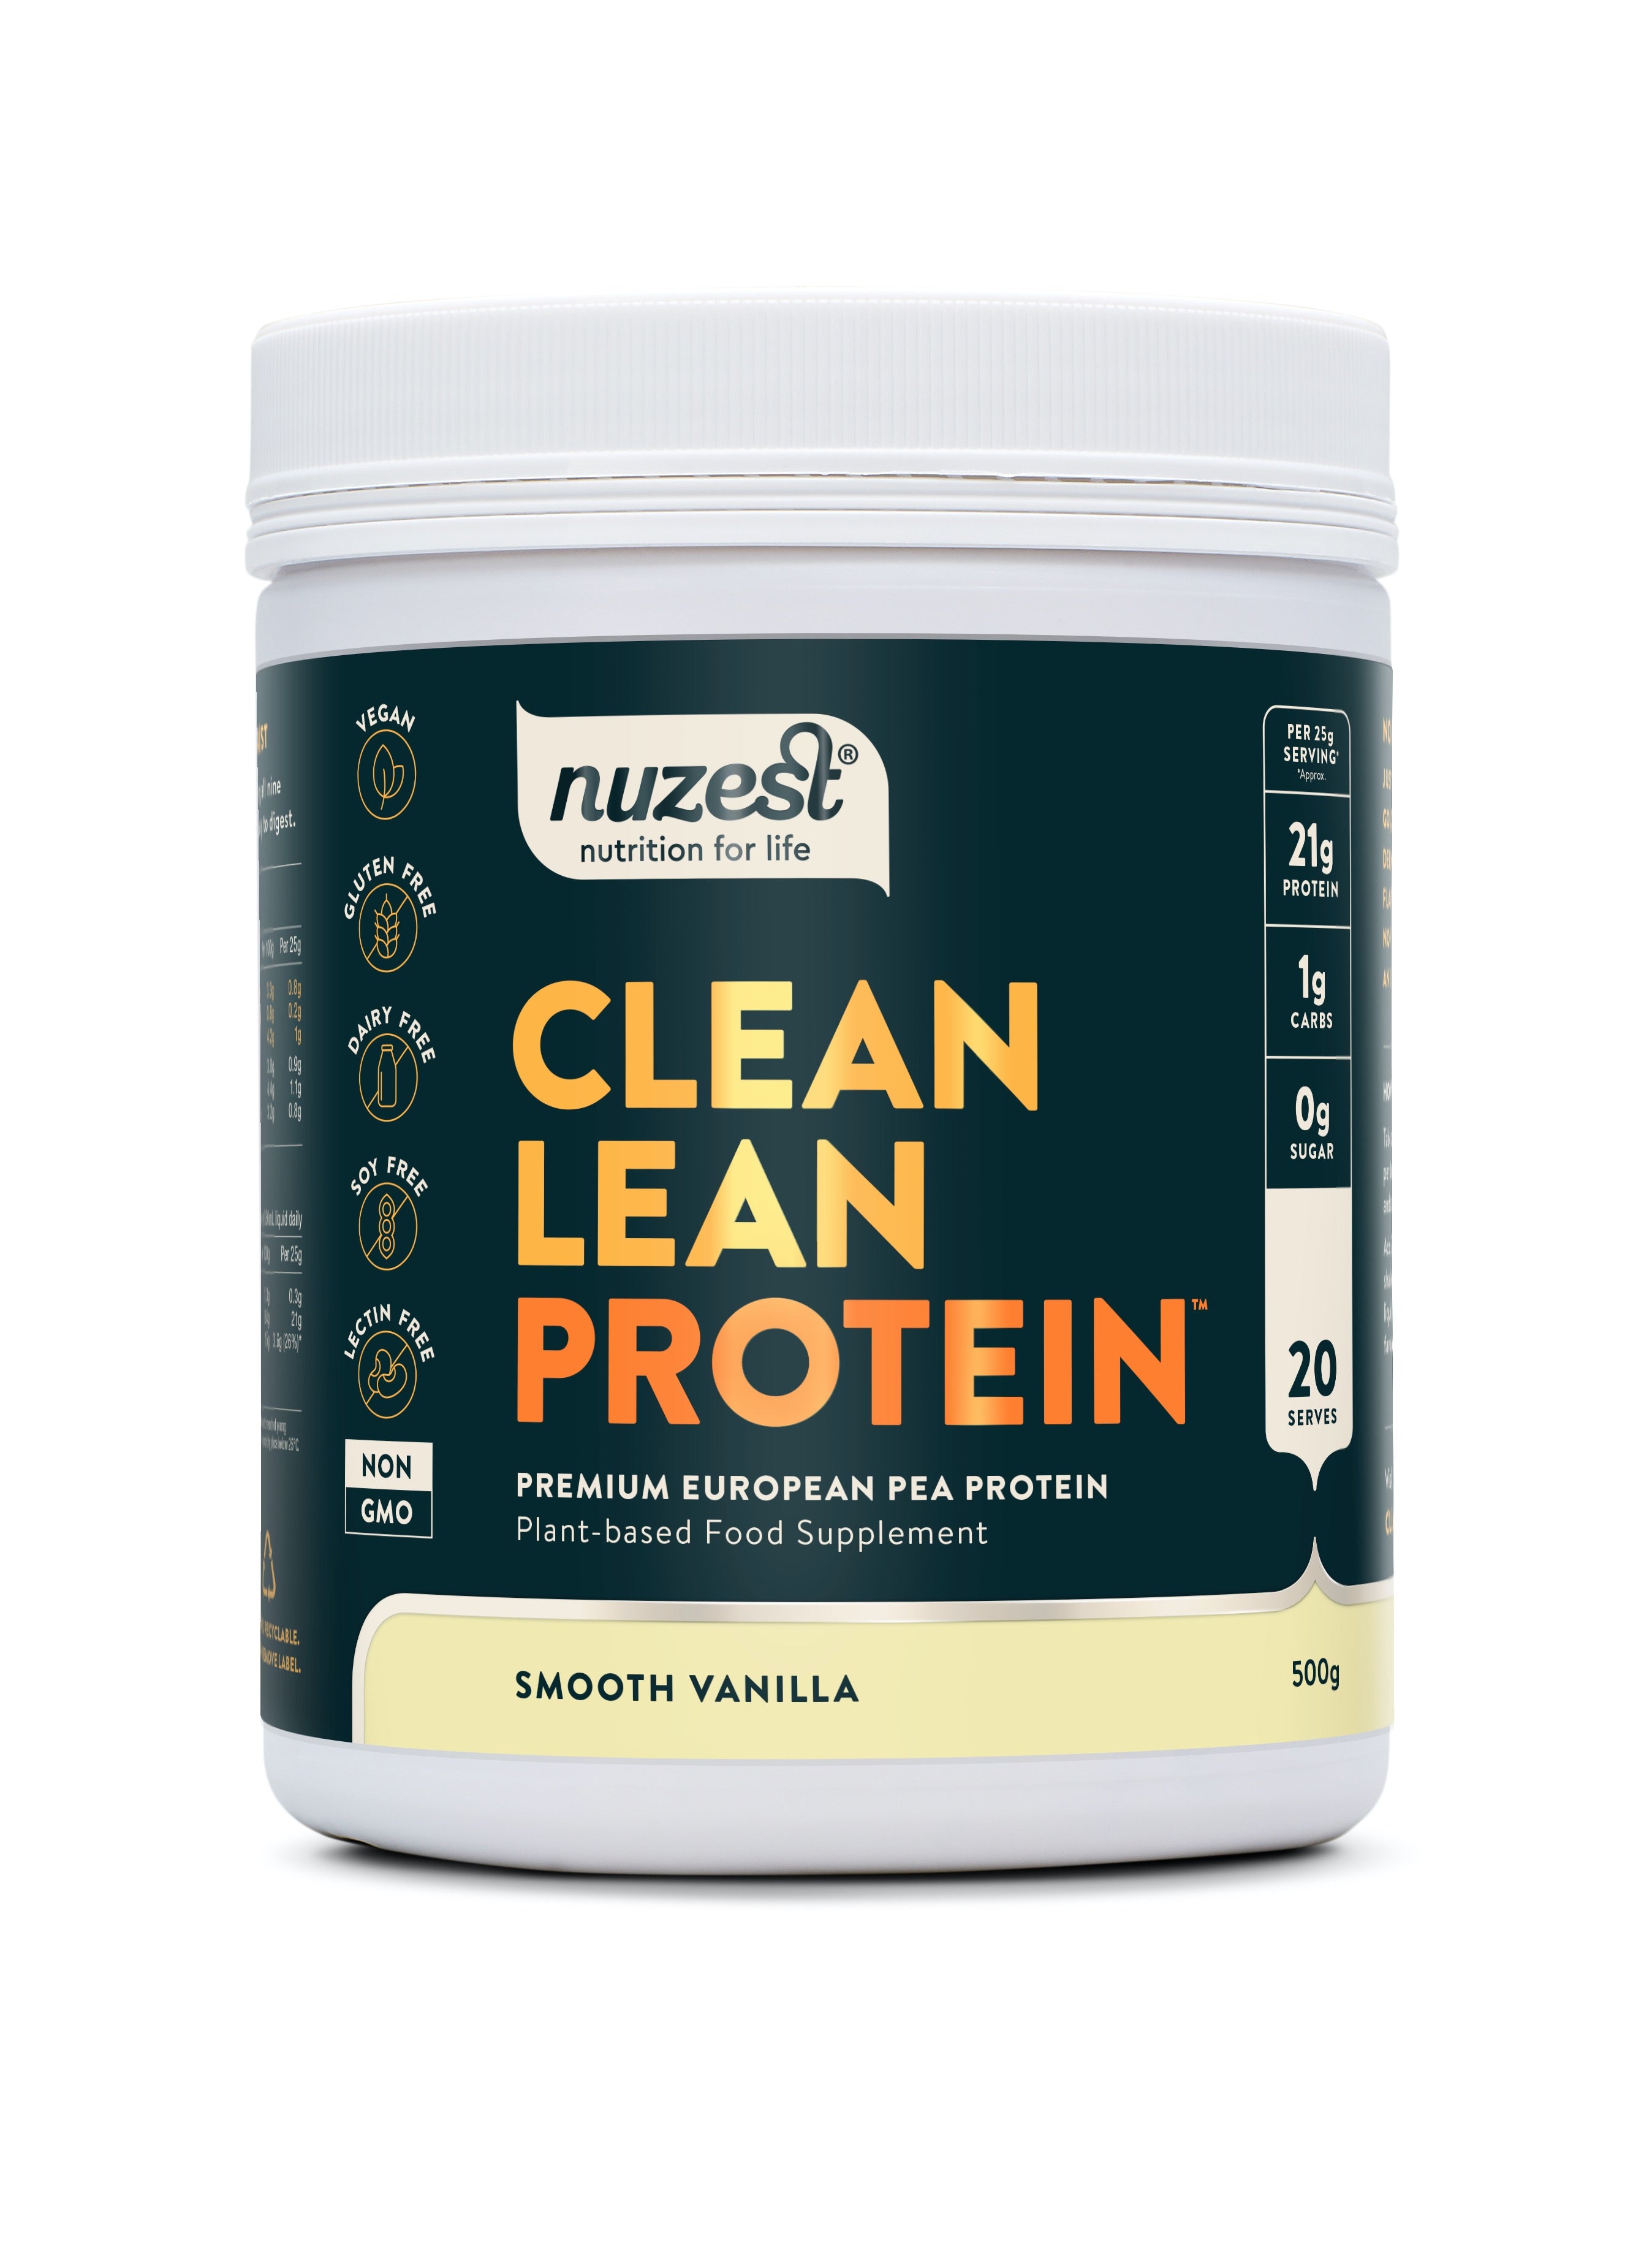 Nuzest Clean Lean Protein Smooth Vanilla